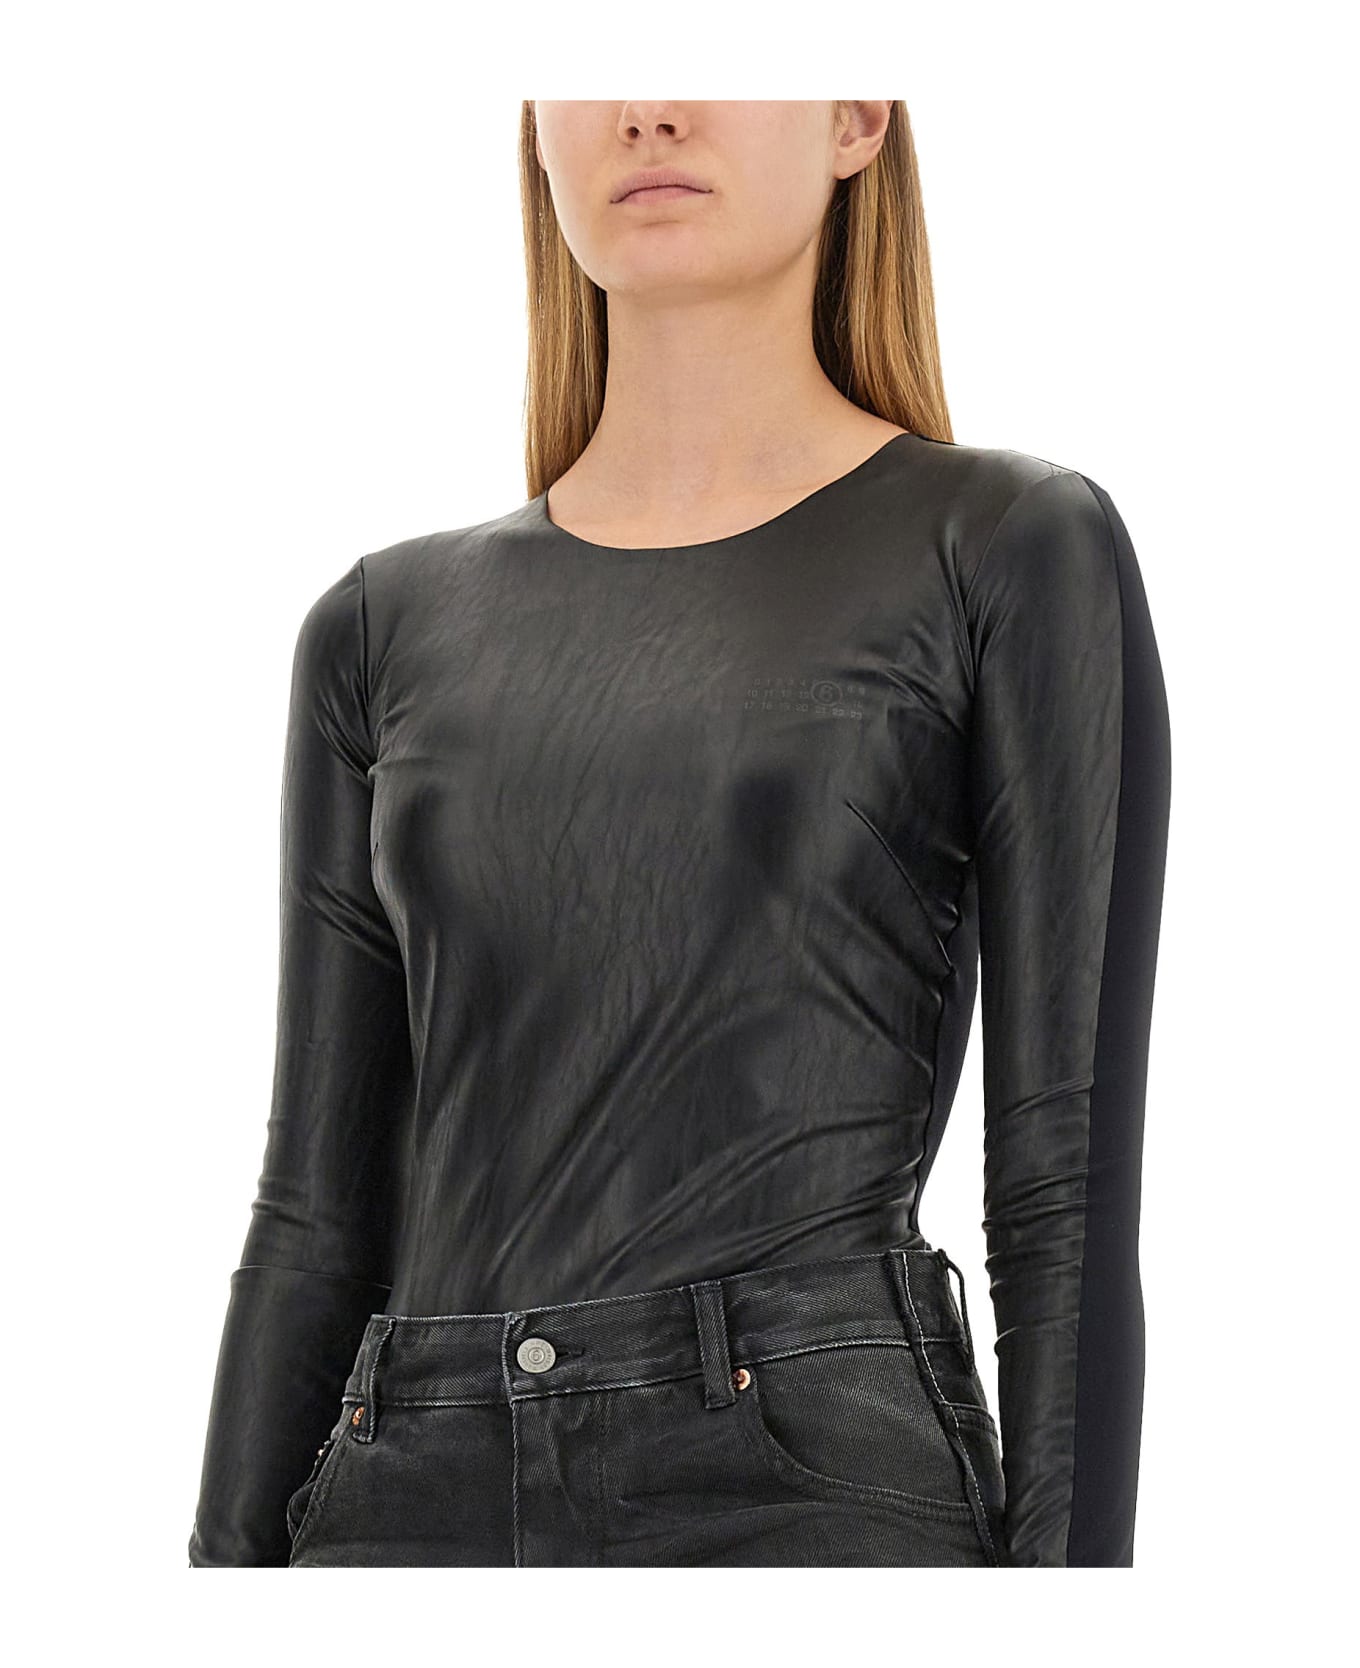 MM6 Maison Margiela Faux Leather Bodysuit - Black